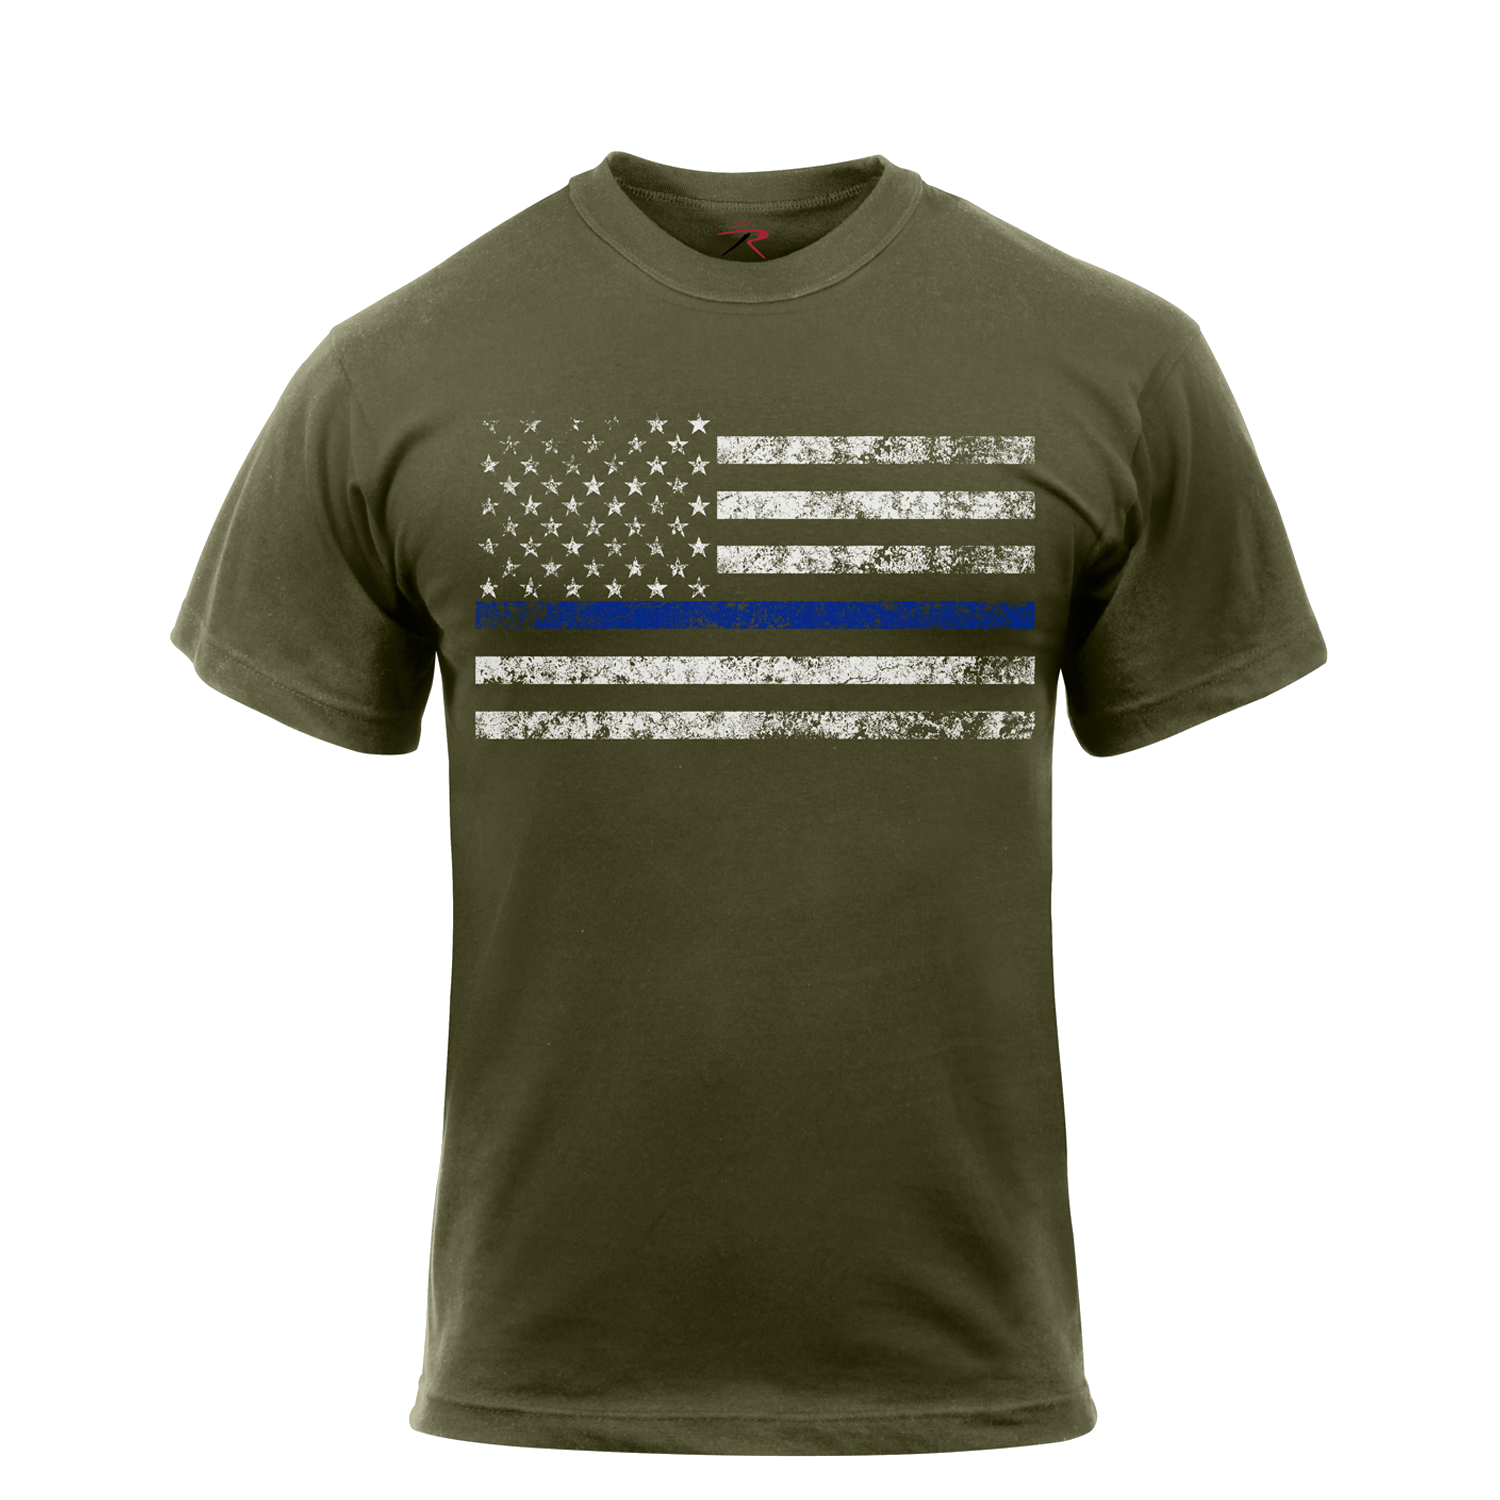 Rothco Thin Blue Line T-Shirt Olive Drab (1092)